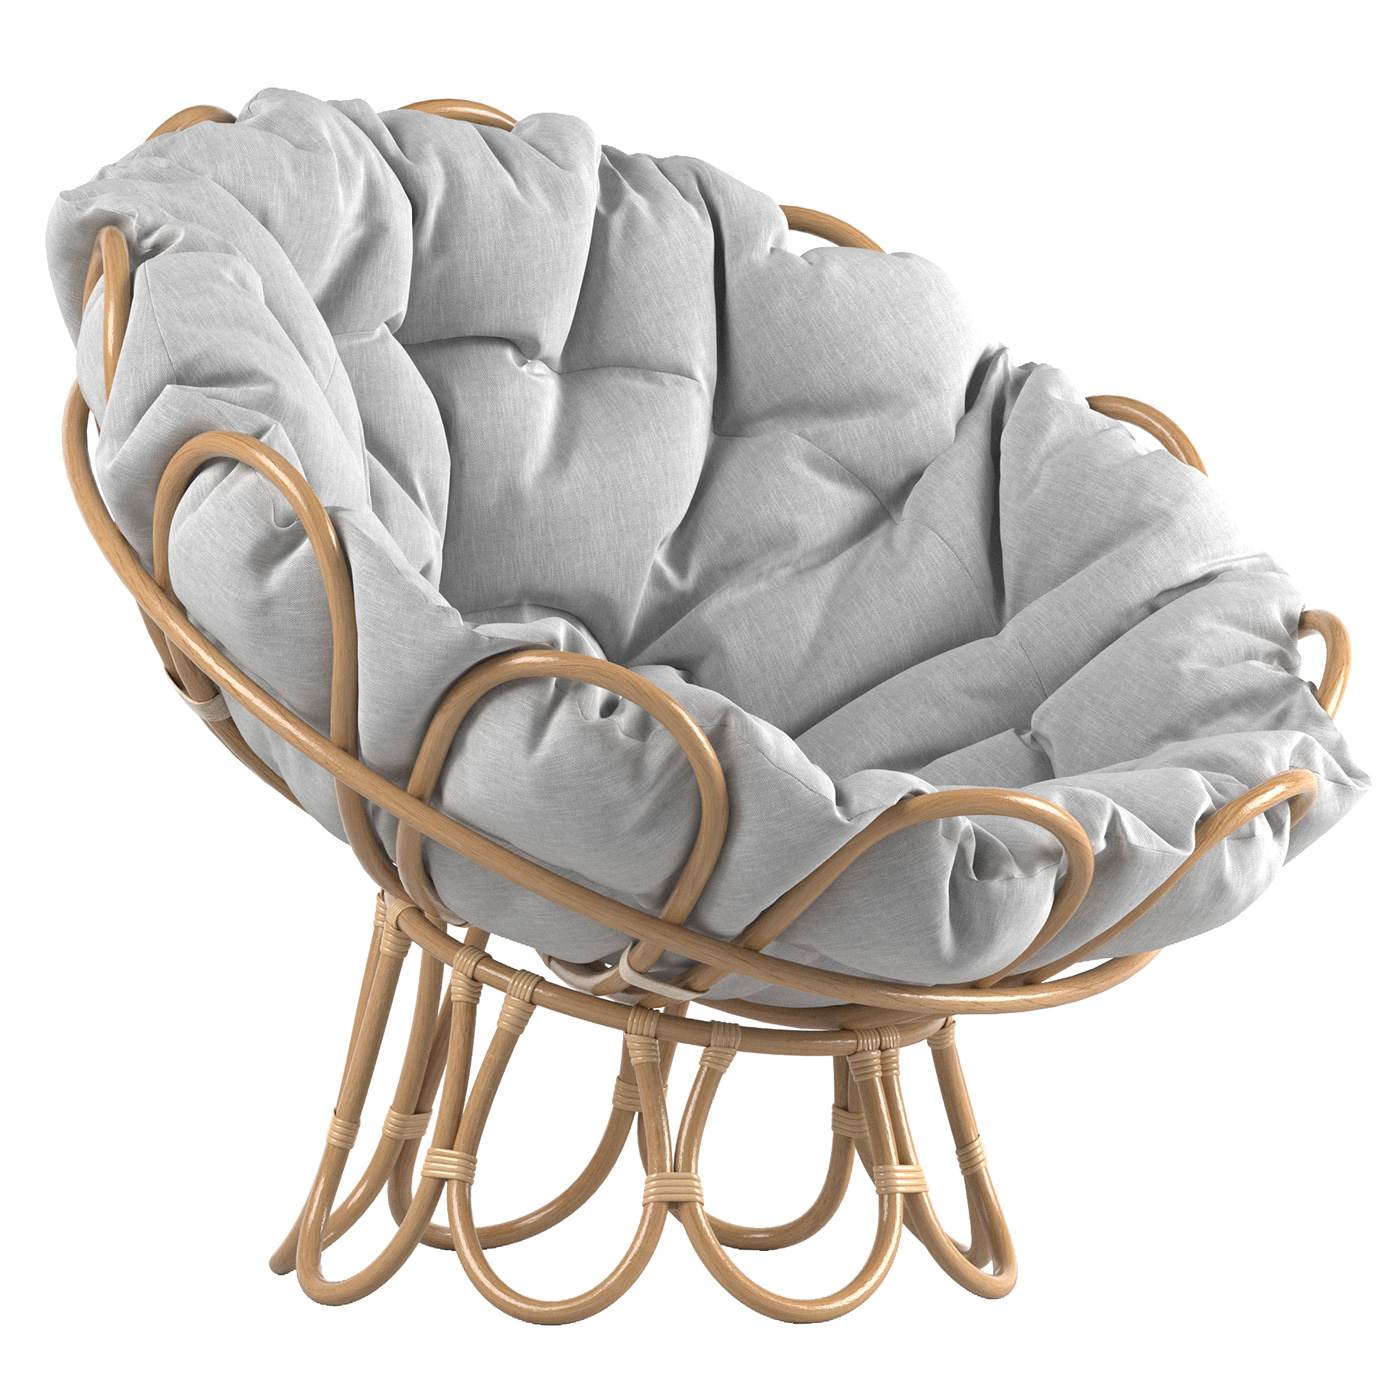 3D 3ds max architecture CGI chair furniture Interior interior design  modern Render